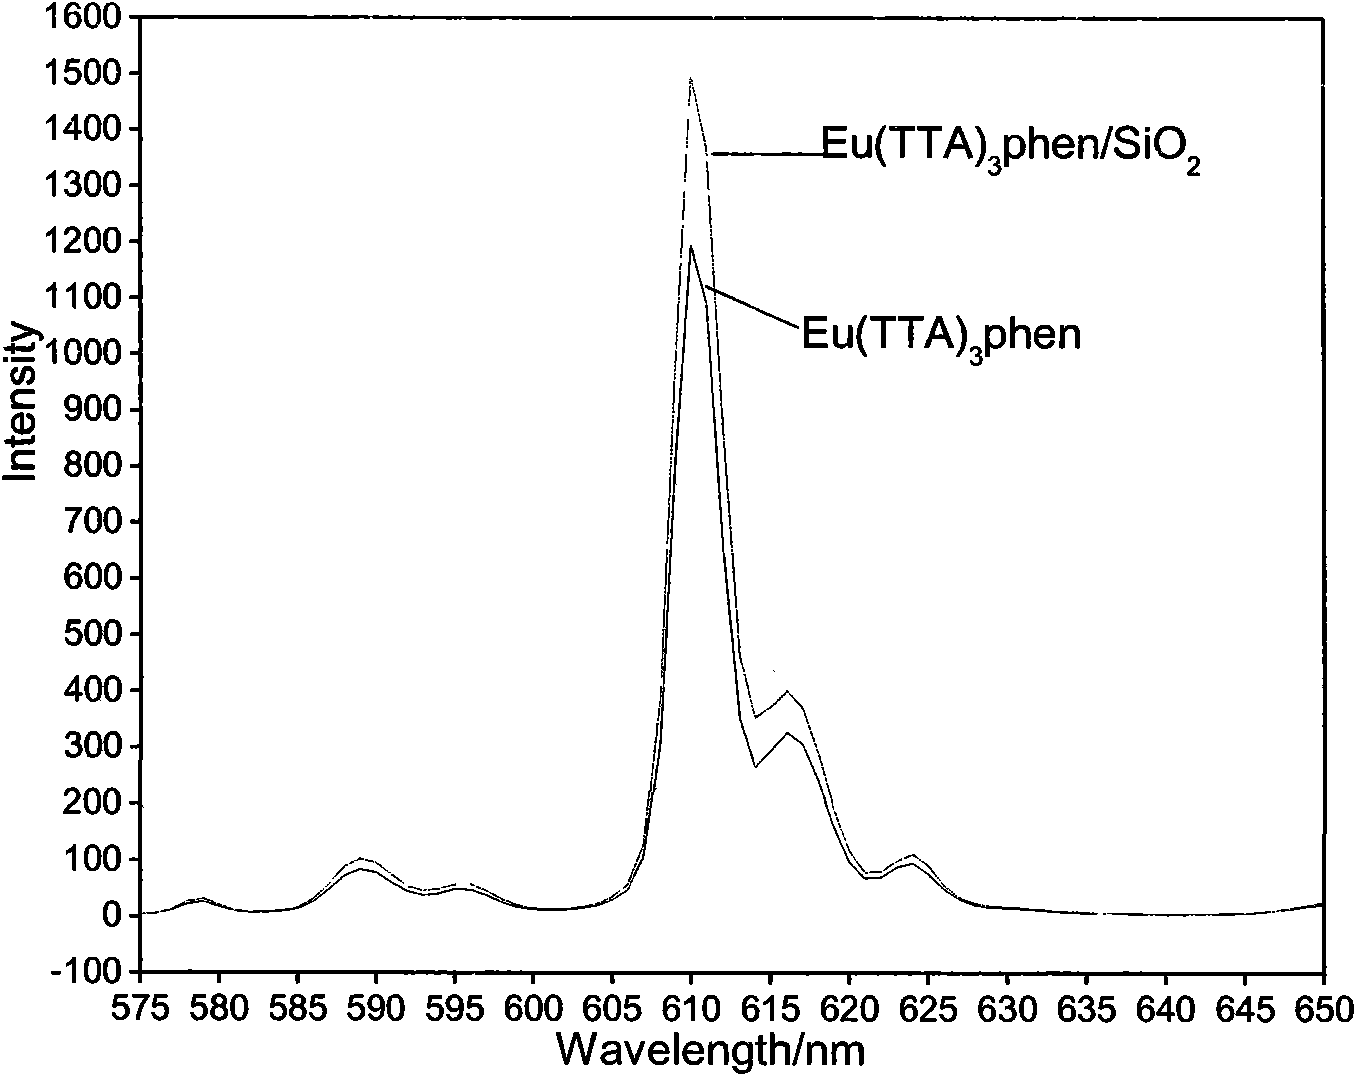 Eu-(TTA)3-1,10-phen/SiO2 core/shell type nano composite fluorescent material